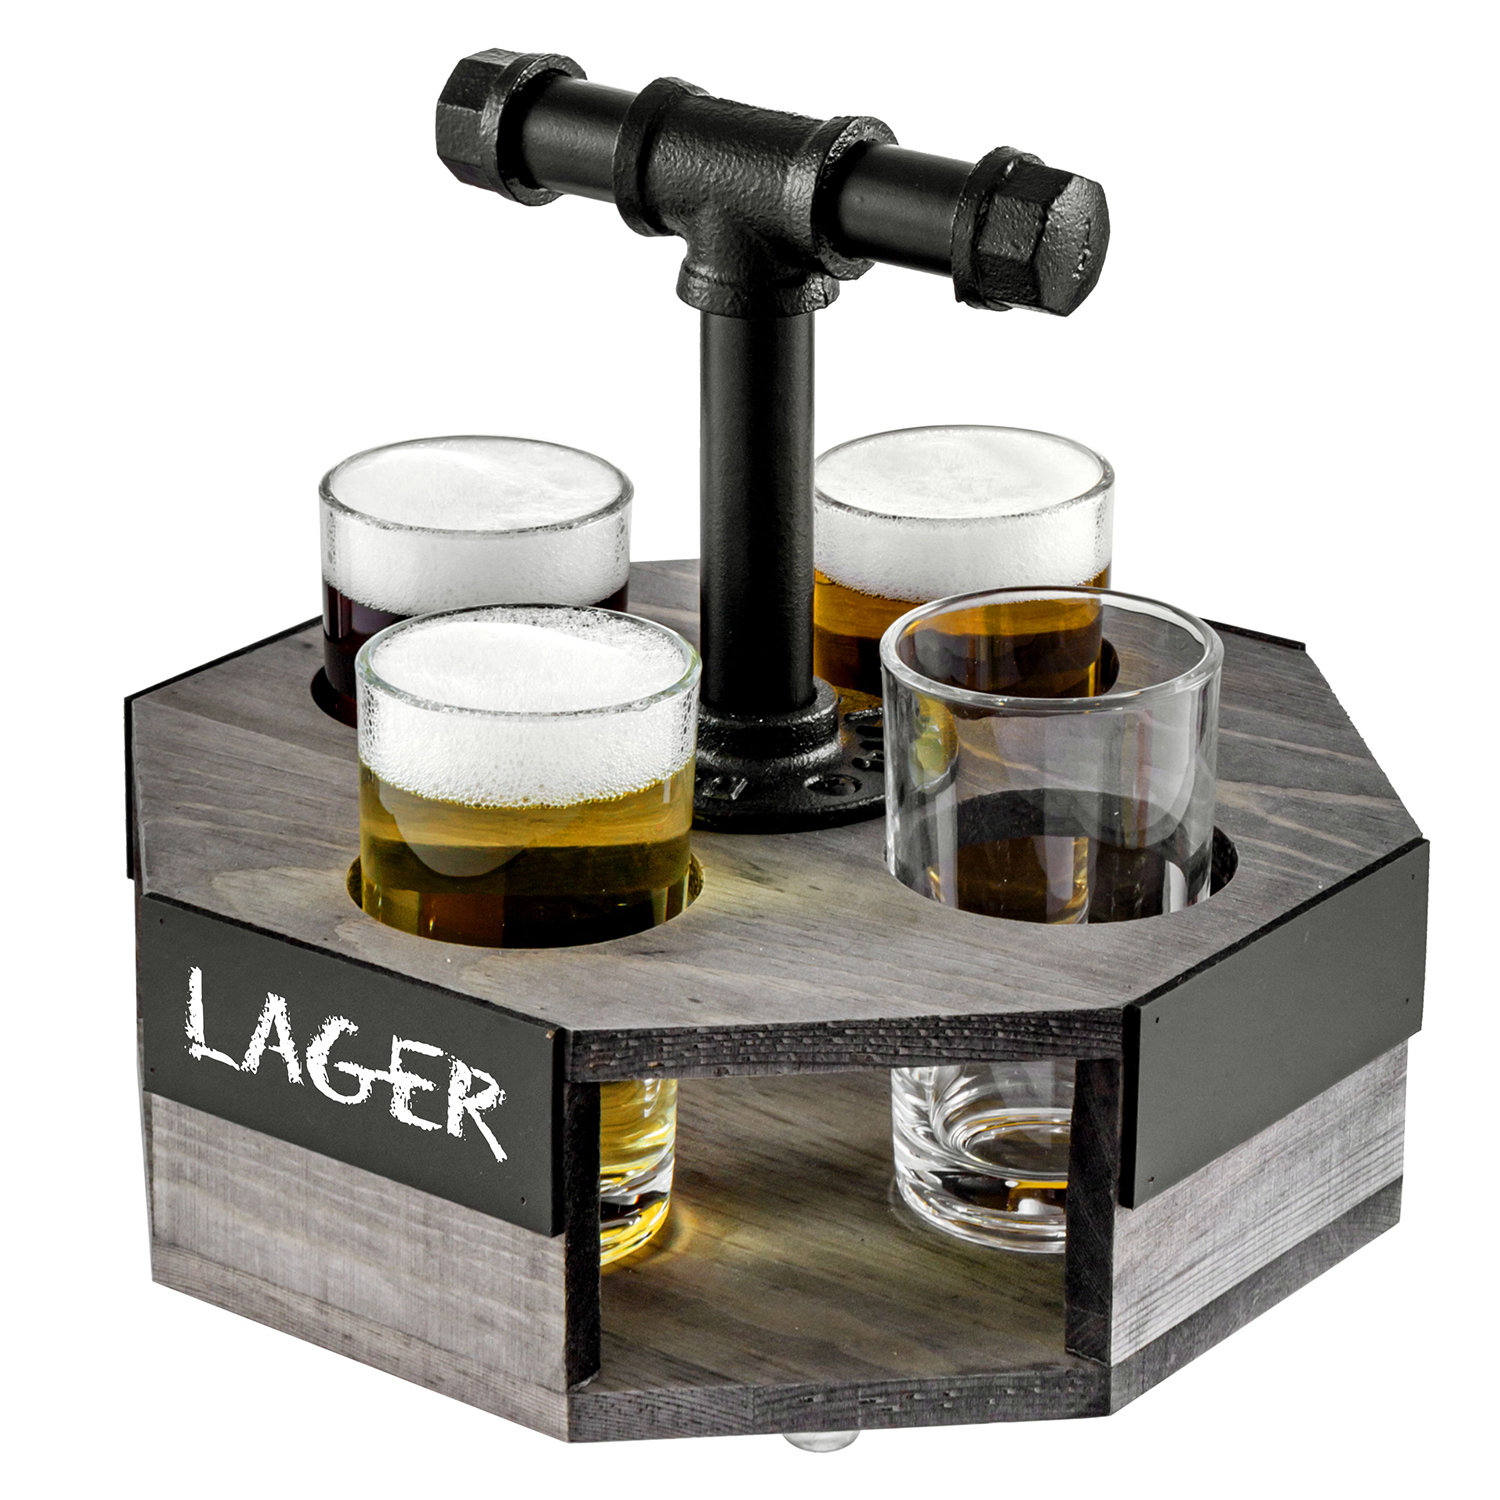 MyGift Burnt Brown Wood Beer Flight Tasting Sampler Server Set with 4 Beer  Glasses, Chalkboard Label & Black Metal Handle